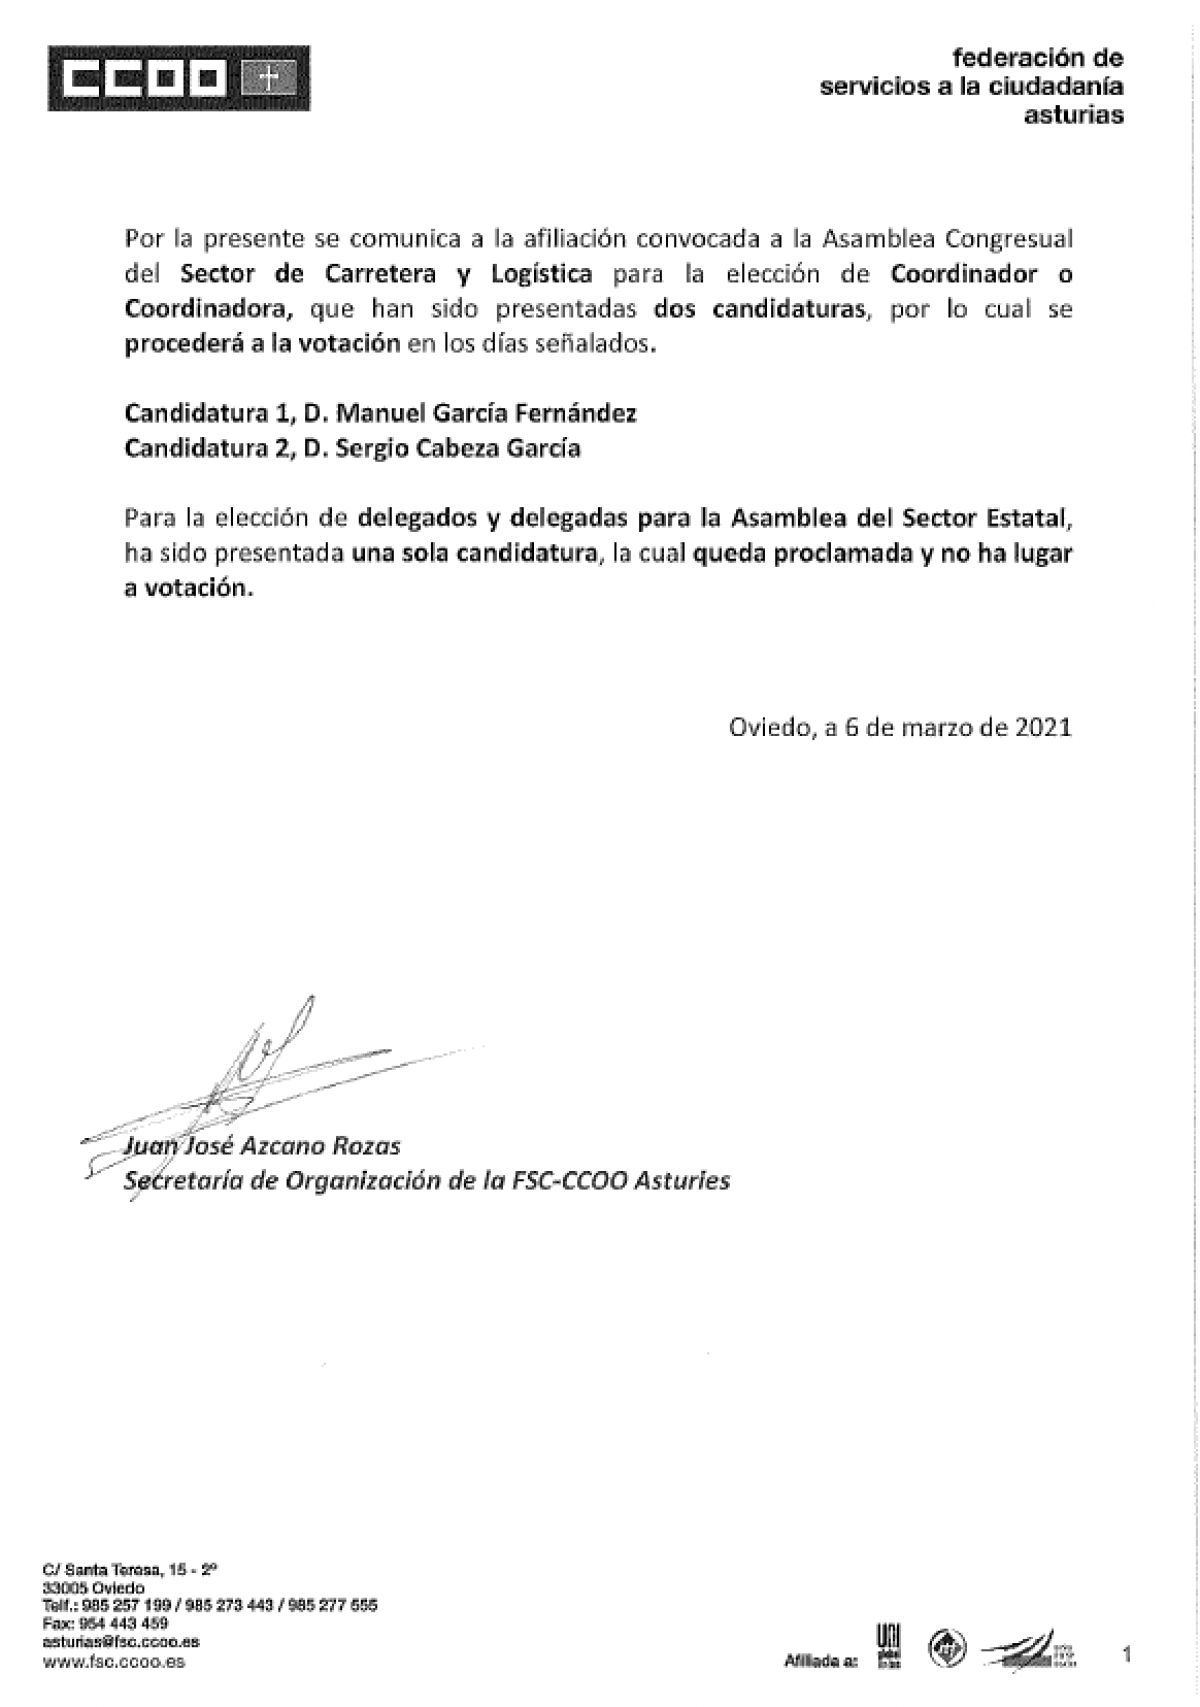 Votación coordinador S. Carretera y proclamación candidatura única delegado S. Estatal. FSC Asturias